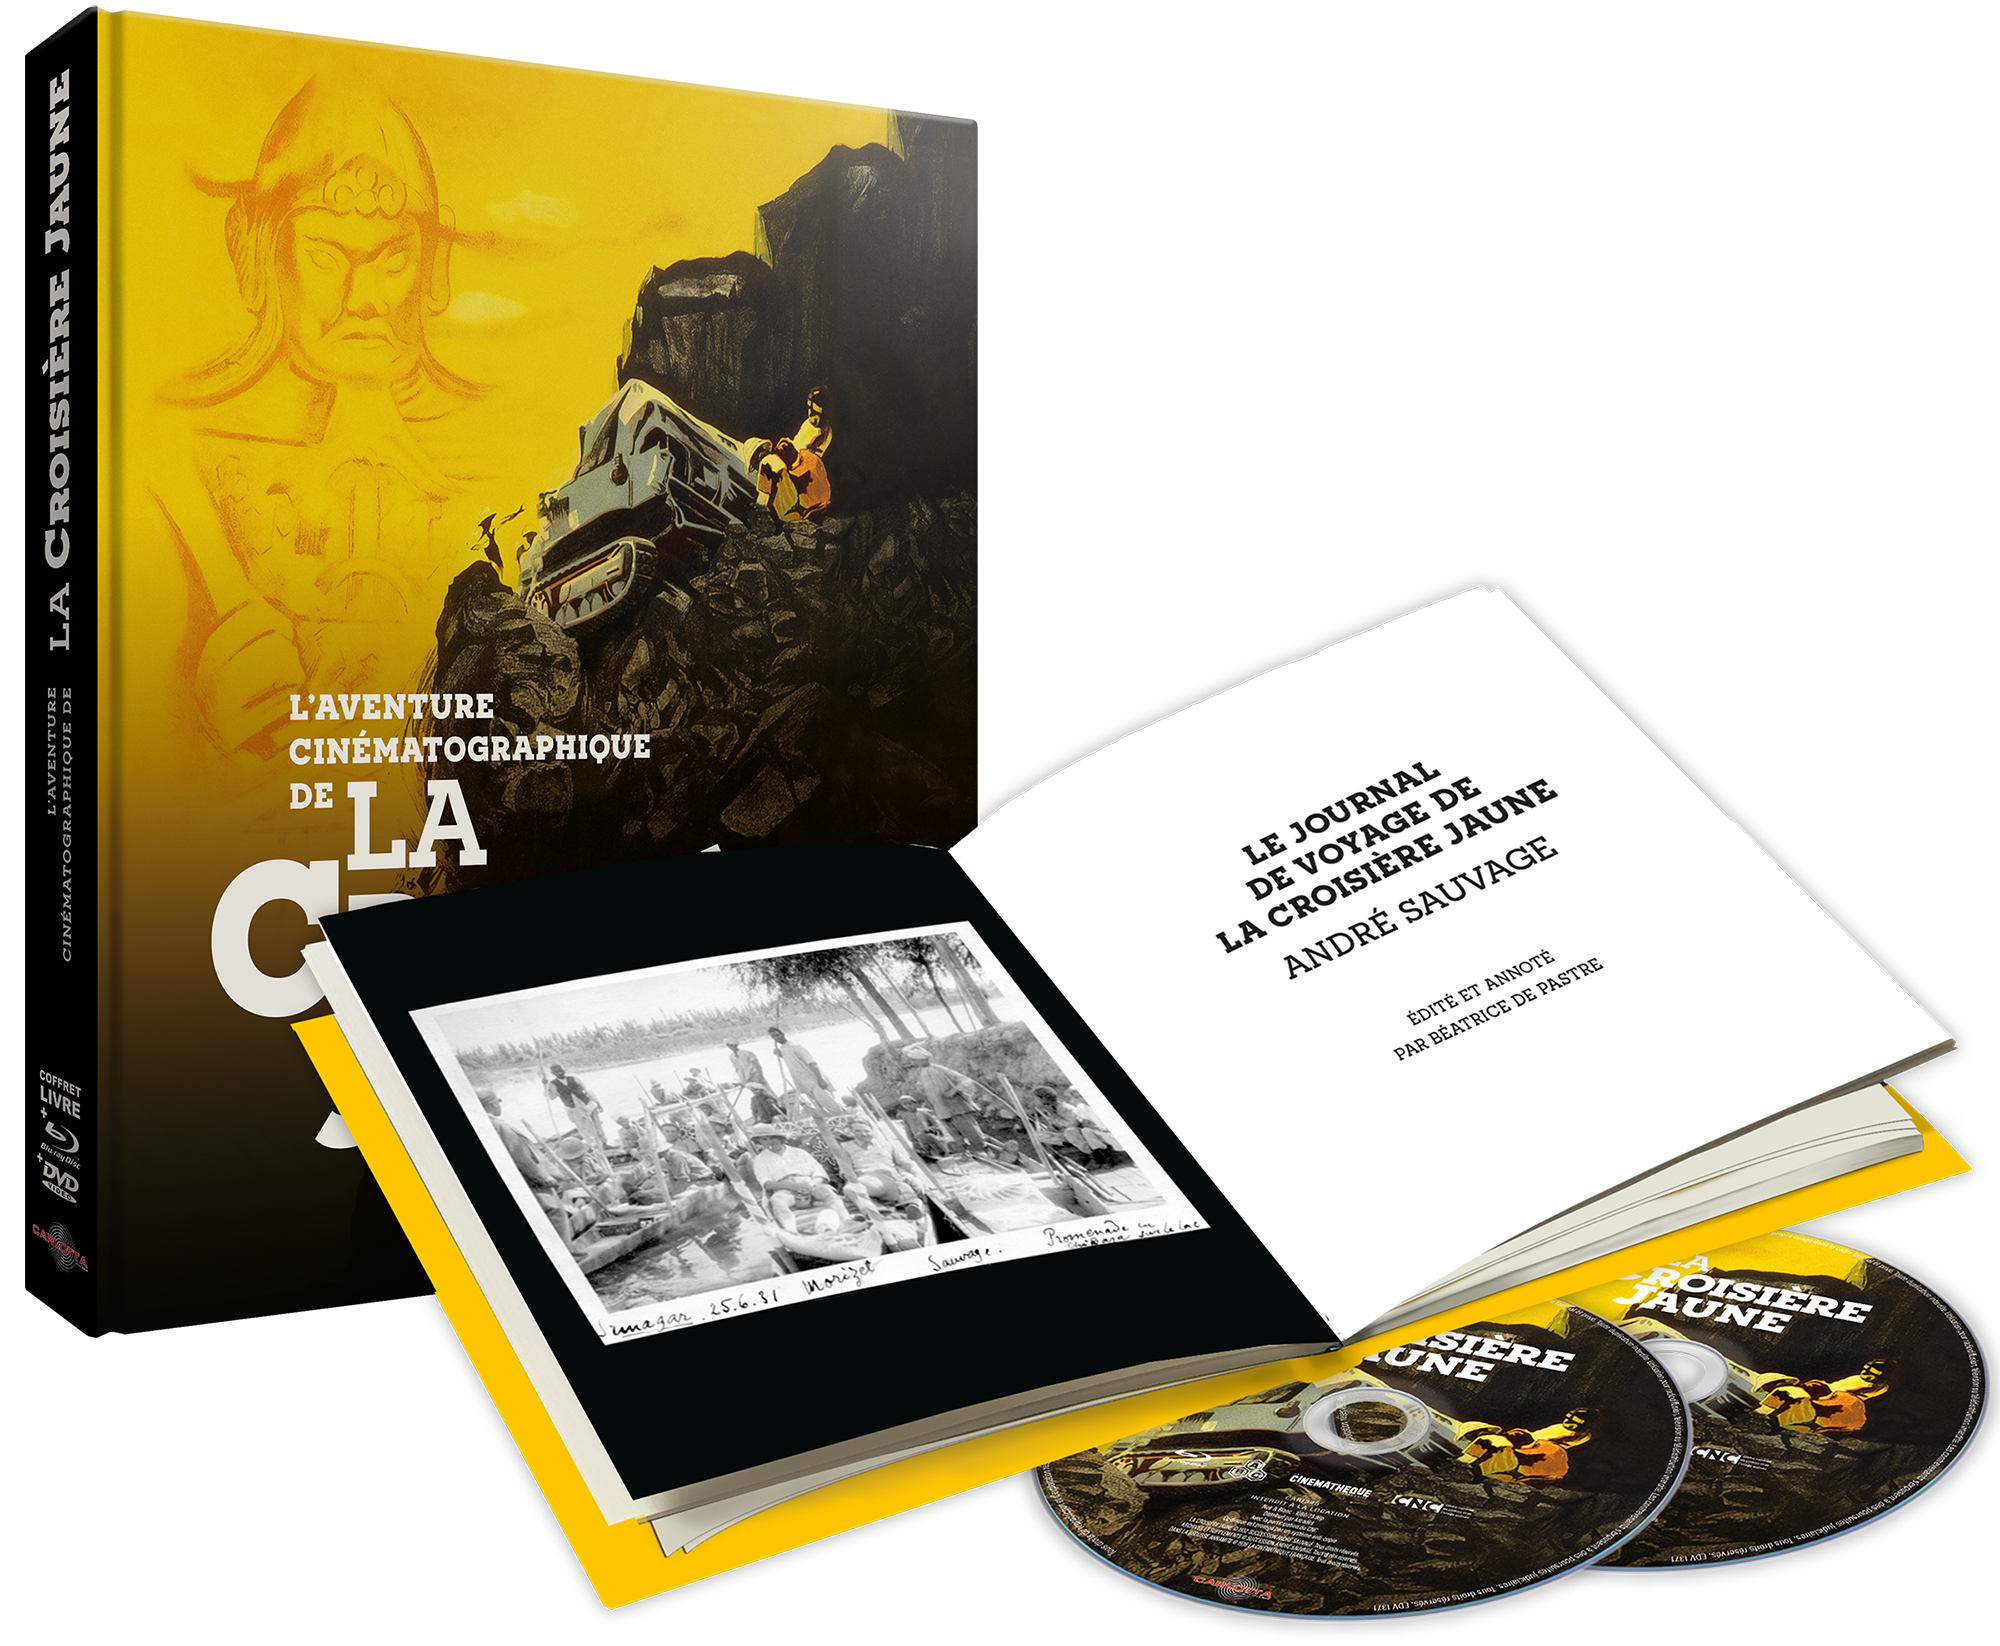 L'Aventure cinématographique de La Croisière jaune Blu-ray + DVD + Livre